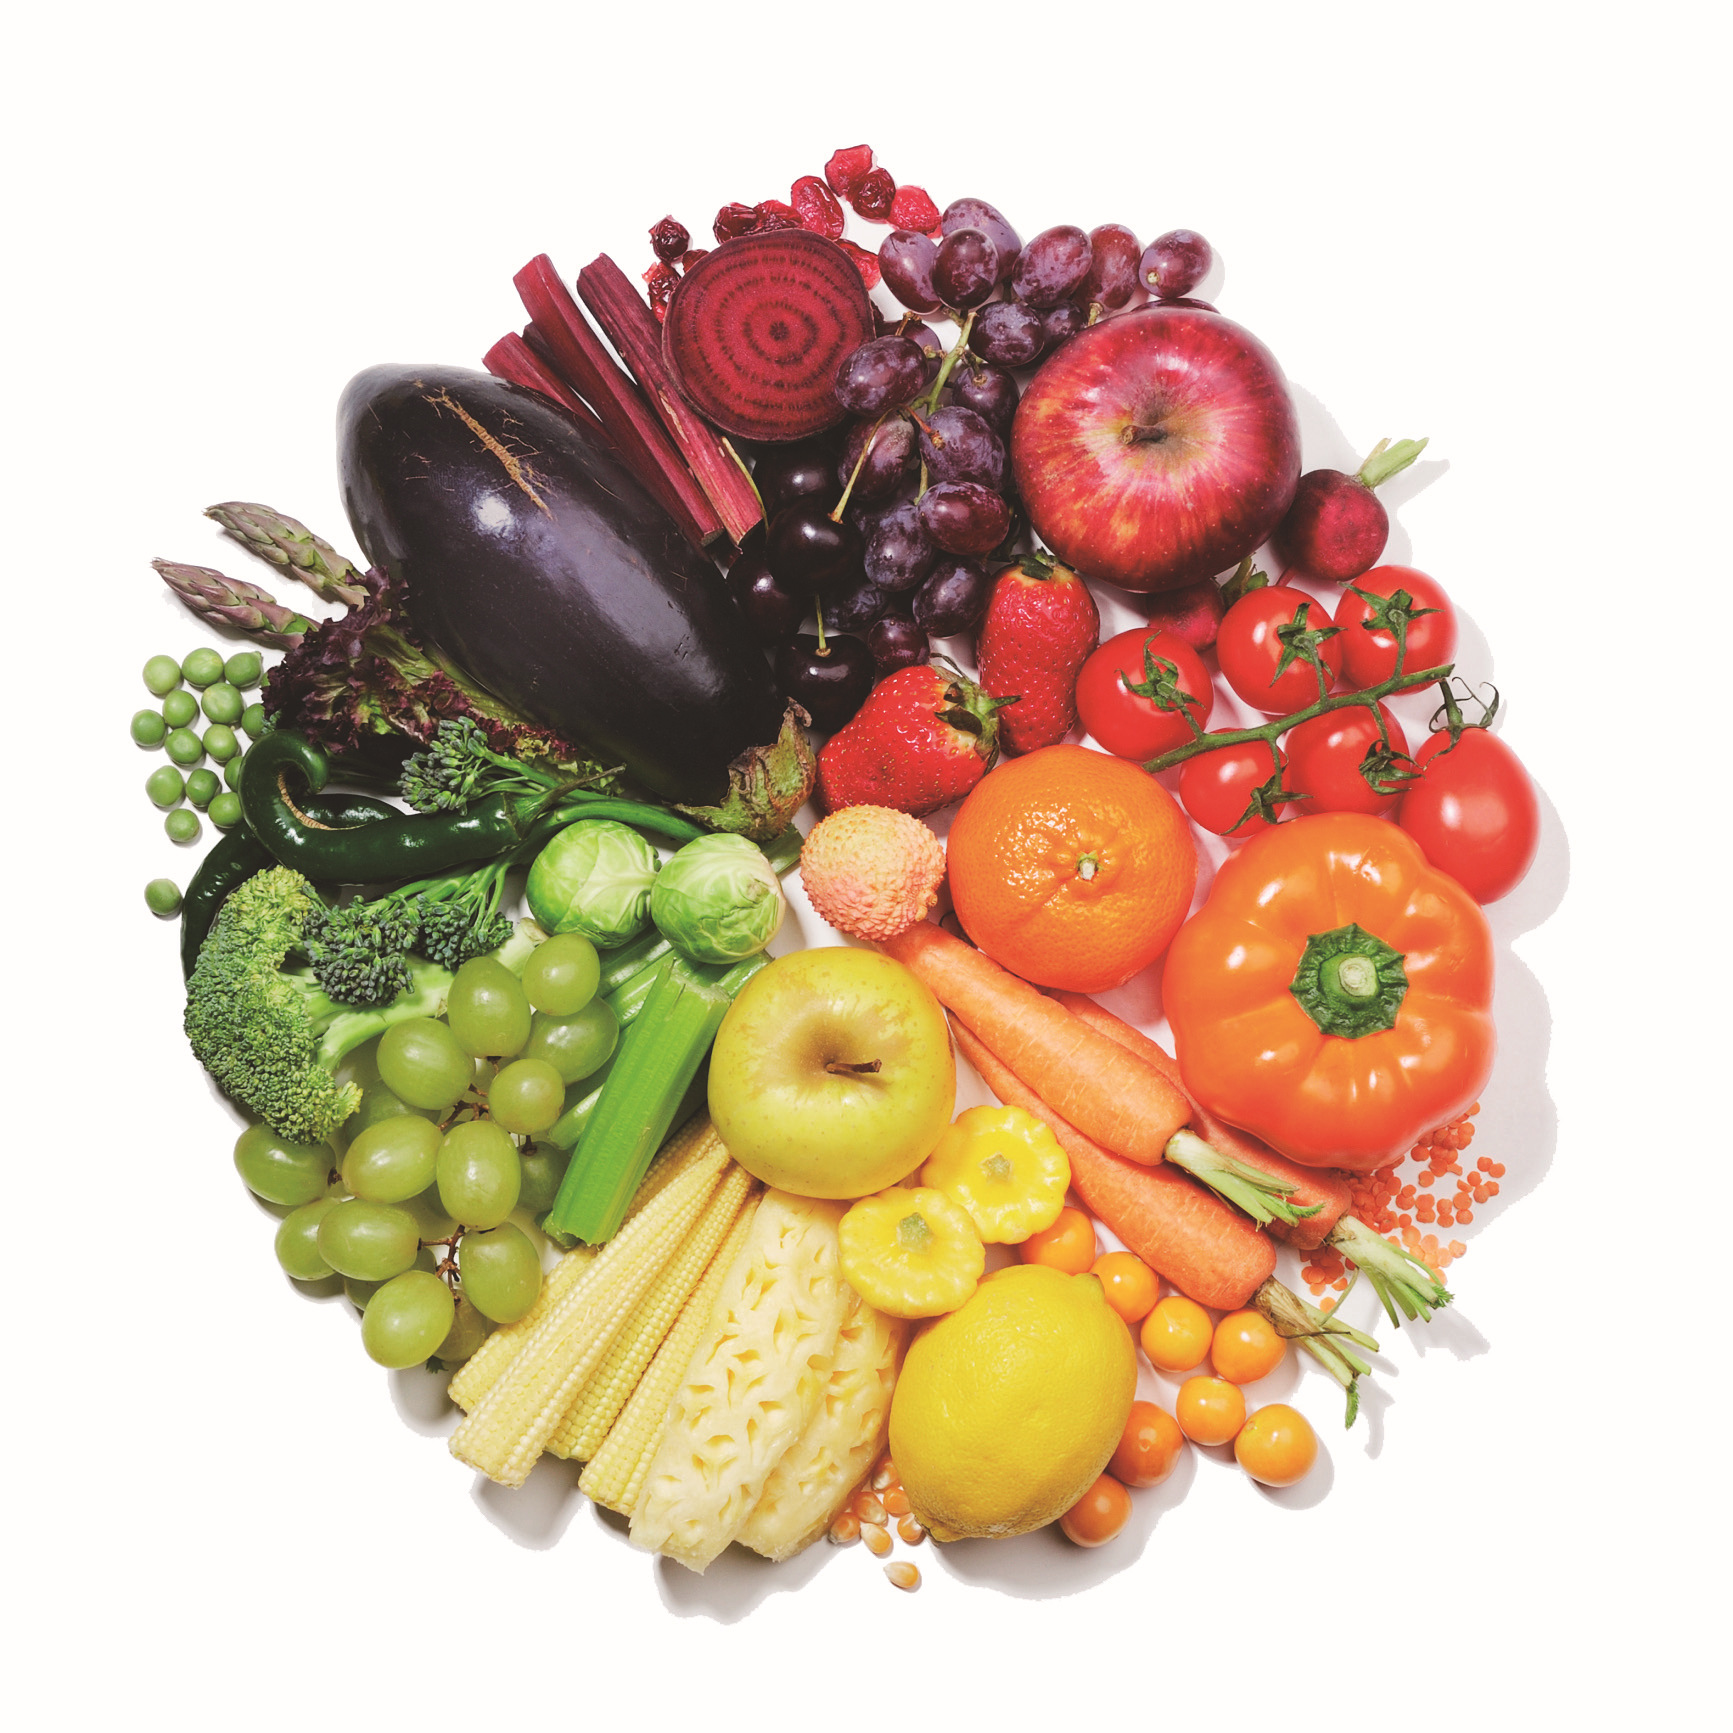 Овощи фрукты форум. Овощи и фрукты. Разные фрукты и овощи. Здоровая еда. Obishi i frukti.